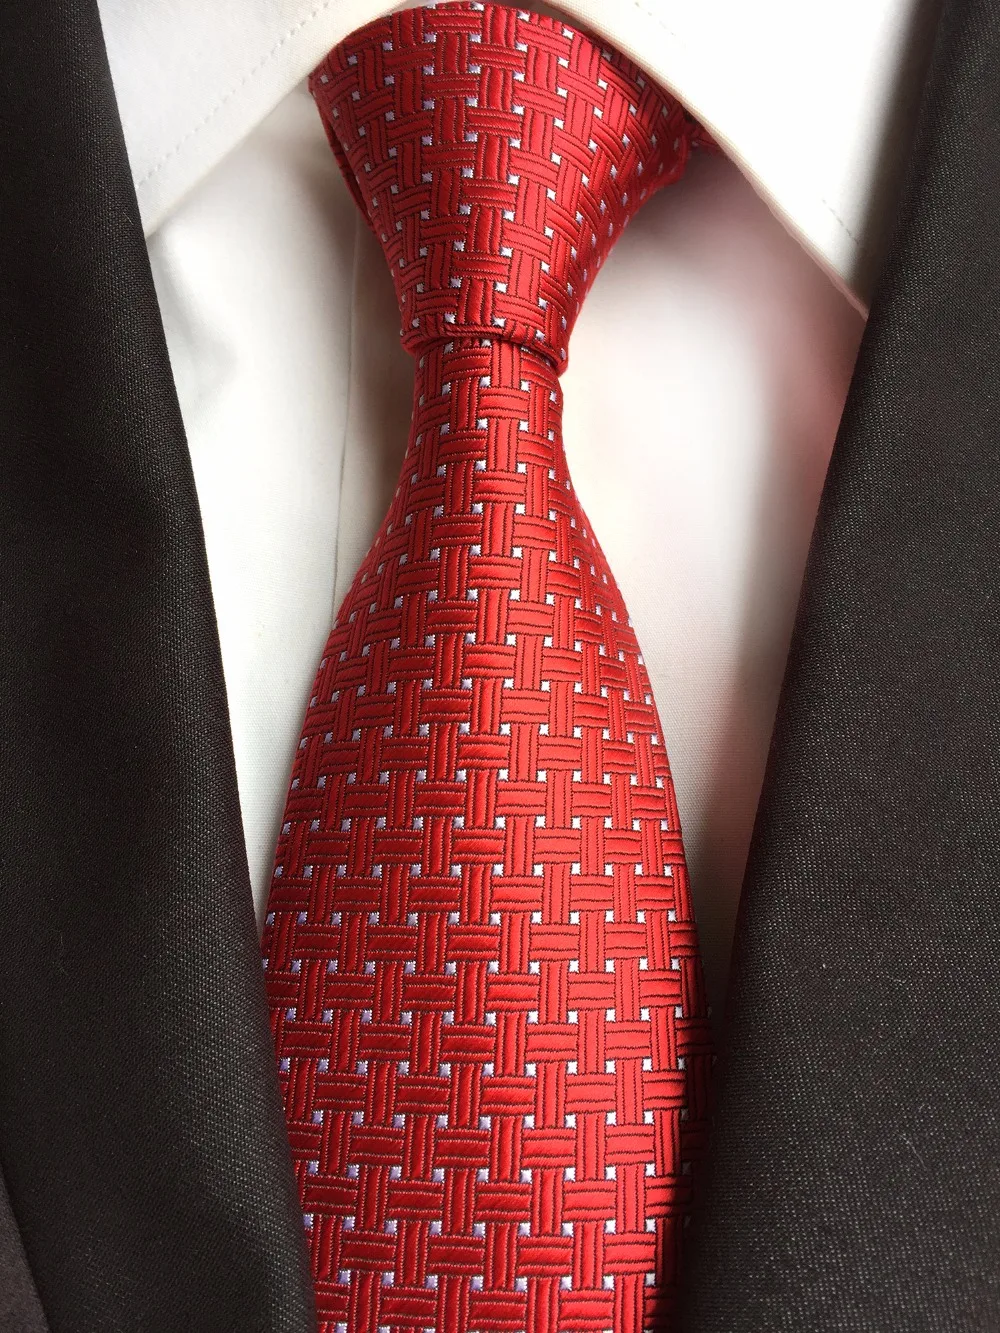 Галстуки мужские красные. Красный галстук. Галстук красный мужской. Коассный галстук. Галстук красный мужской с узором.